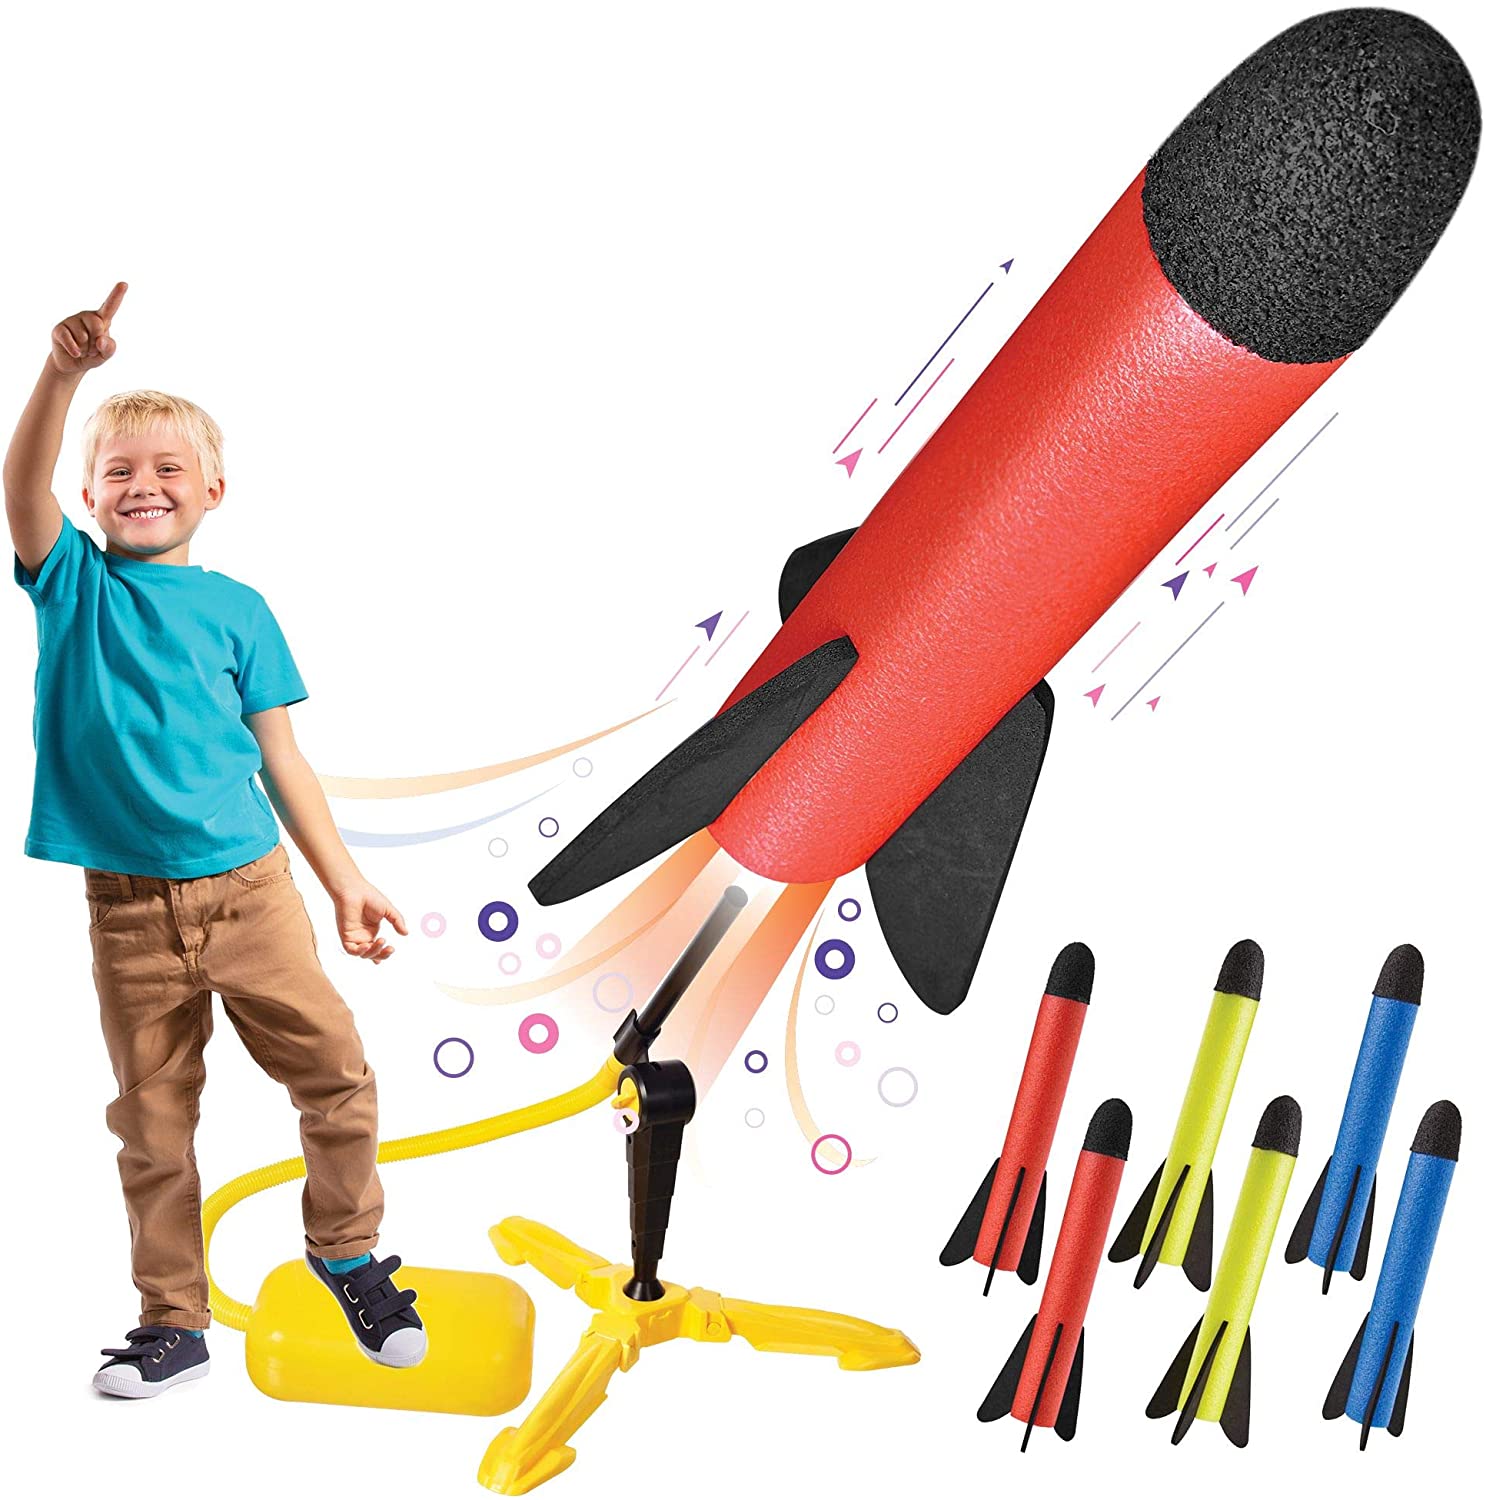 Motoworx Sturdy Toy Rocket Launcher